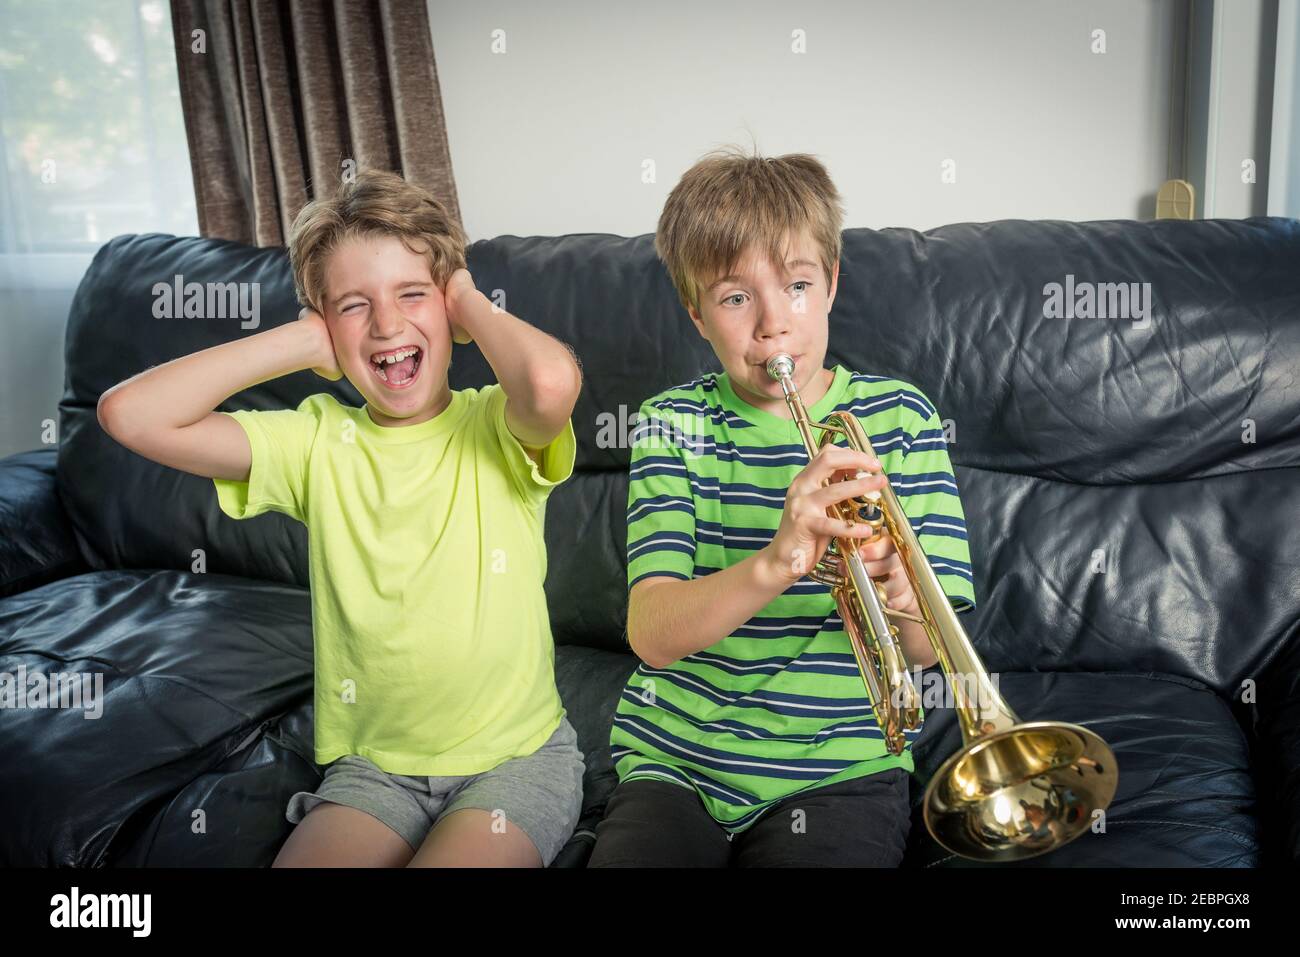 Zwei Kinder sitzen auf einem Sofa. Einer spielt Trompete und das andere Kind verärgert bedeckt seine Ohren mit den Händen Stockfoto